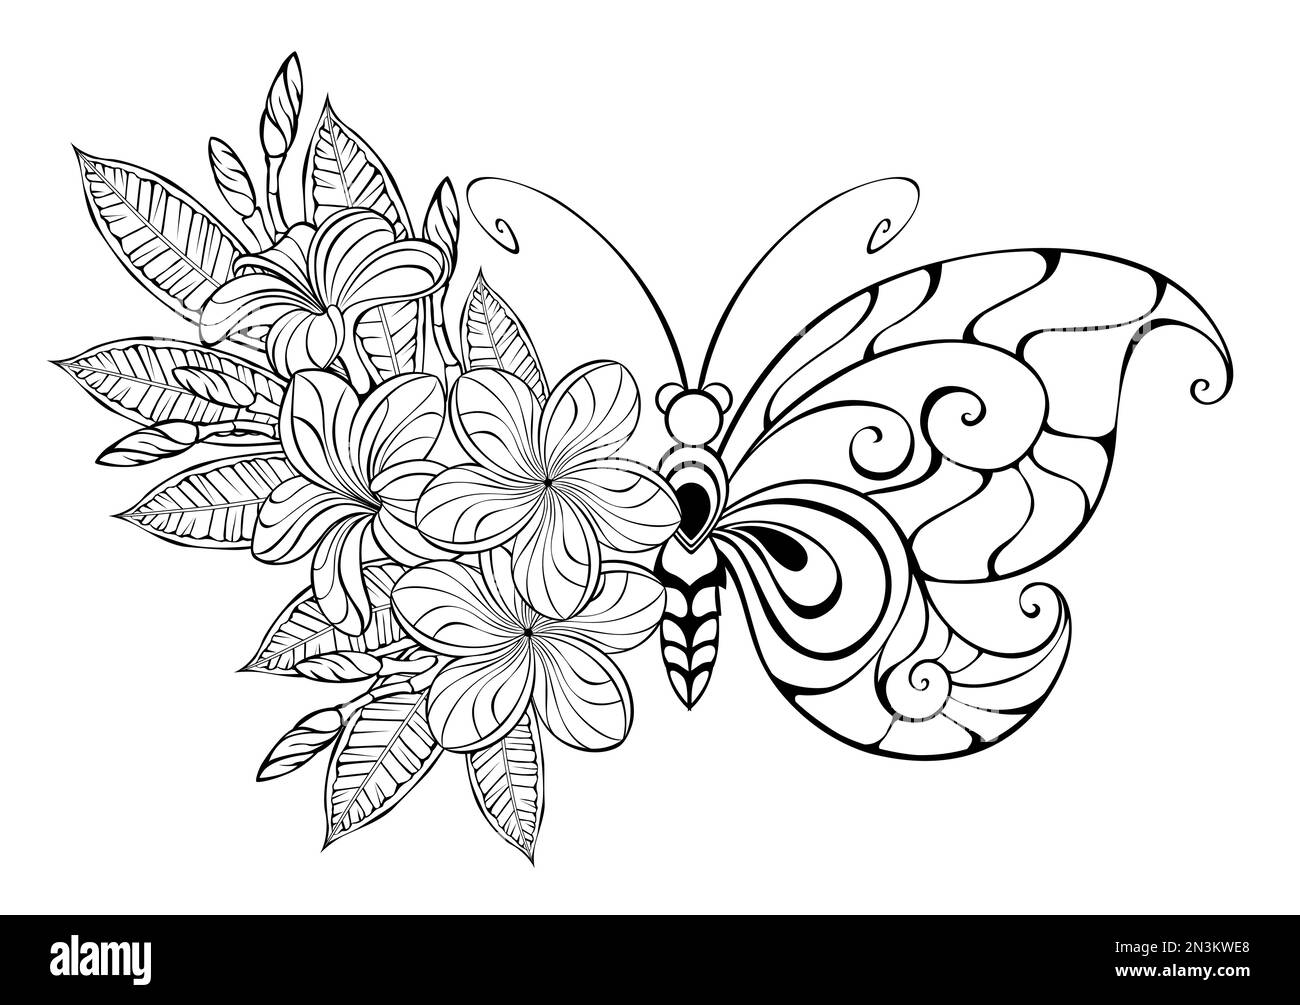 Contorno, farfalla floreale con ala fantasia, decorata con fiori e foglie di una plumeria esotica e contornata su fondo bianco. Farfalla fiore. Illustrazione Vettoriale